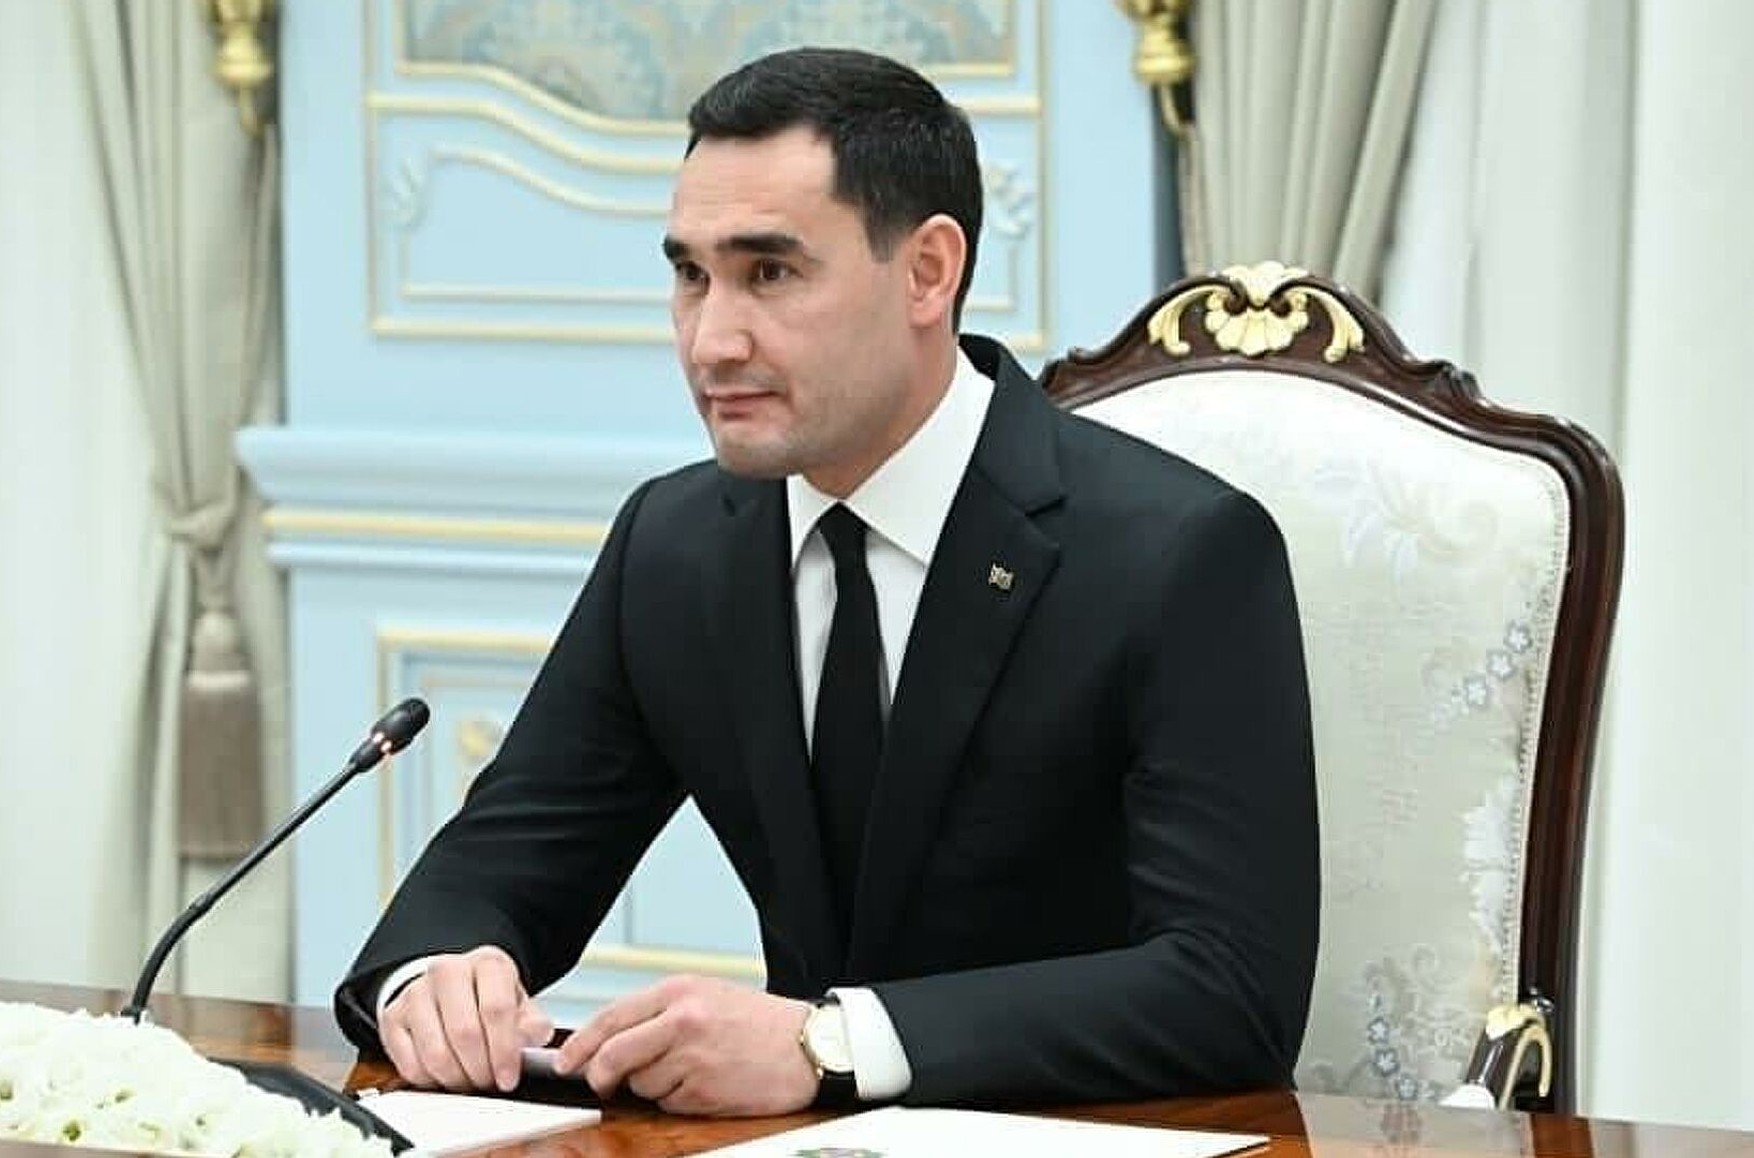 Сын главы Туркмении Сердар Бердымухамедов победил на президентских выборах, набрав 72,97% голосов